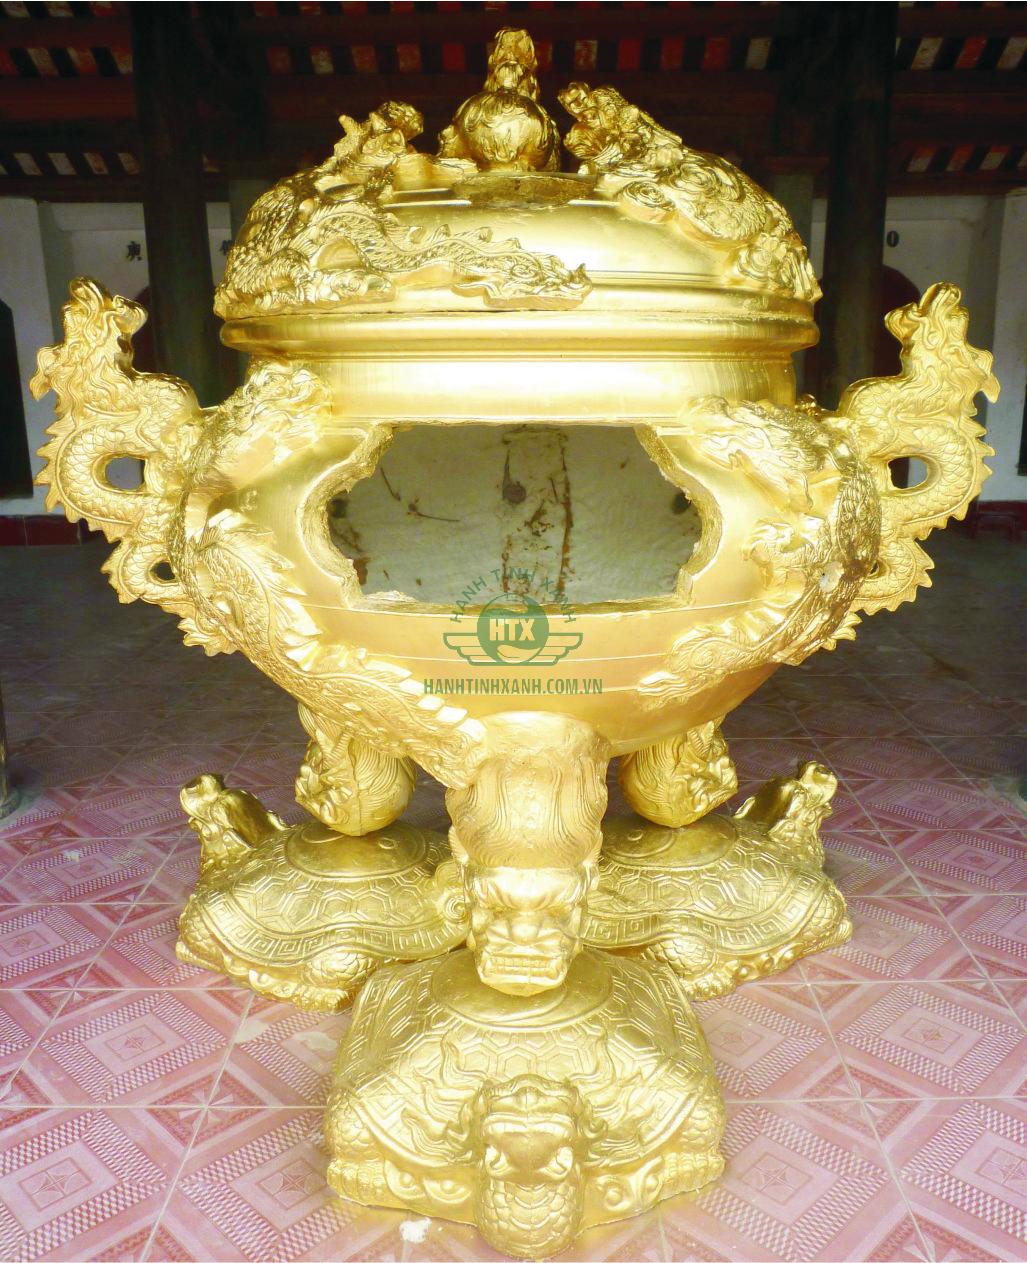 đỉnh hóa vàng thập long tranh châu đế cao cấp, được nhiều đình đền chùa sử  dụng